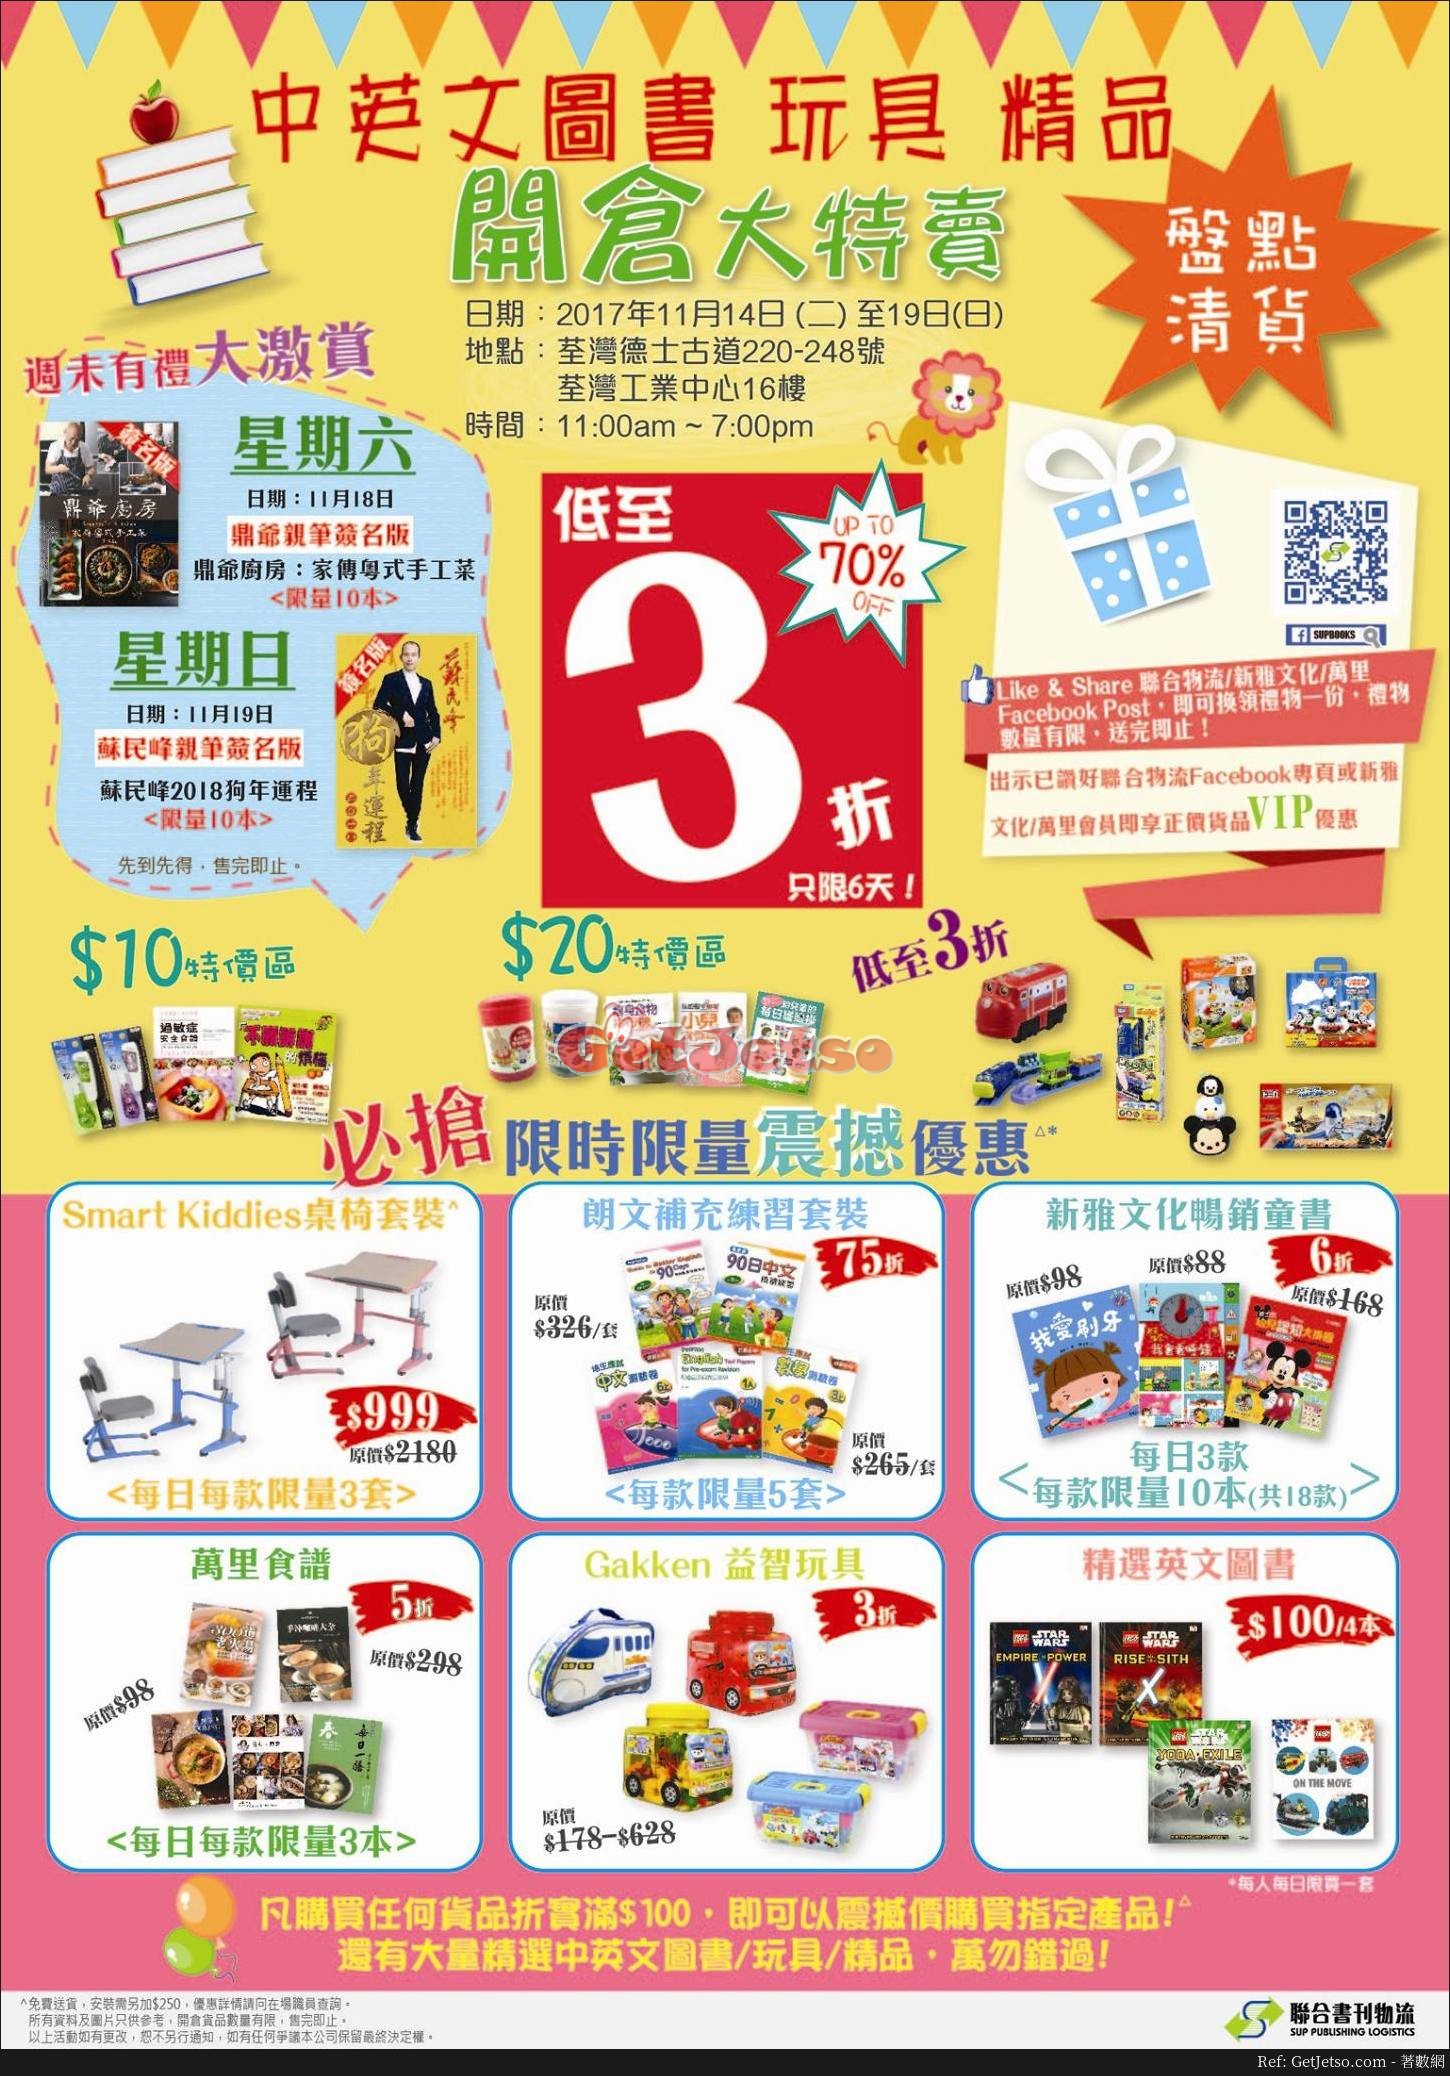 中英文圖書、玩具、精品低至3折開倉優惠(至17年11月19日)圖片1